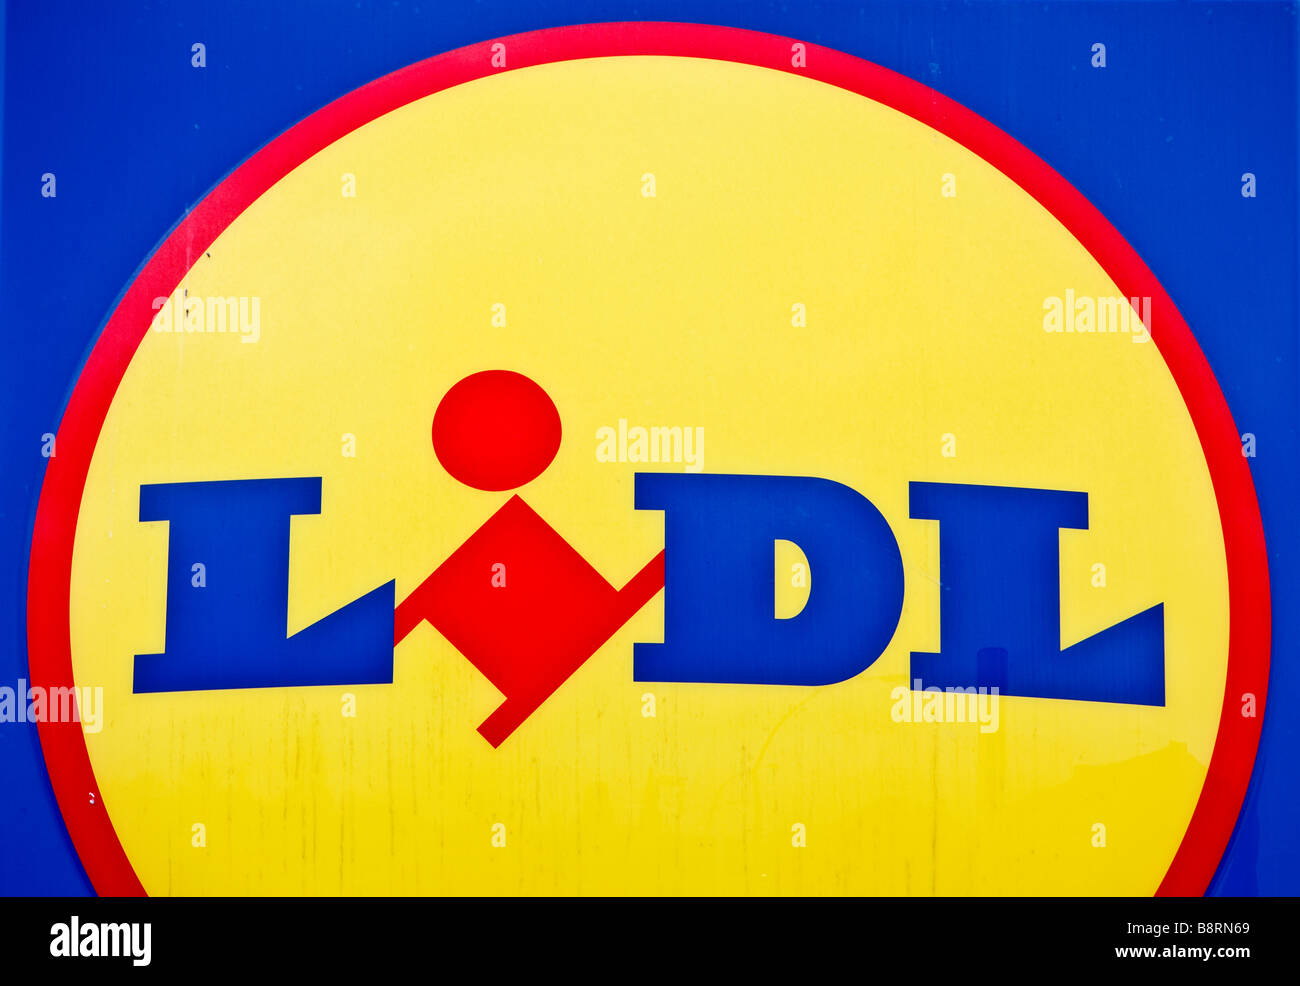 Lidl supermarché store logo sign Banque D'Images